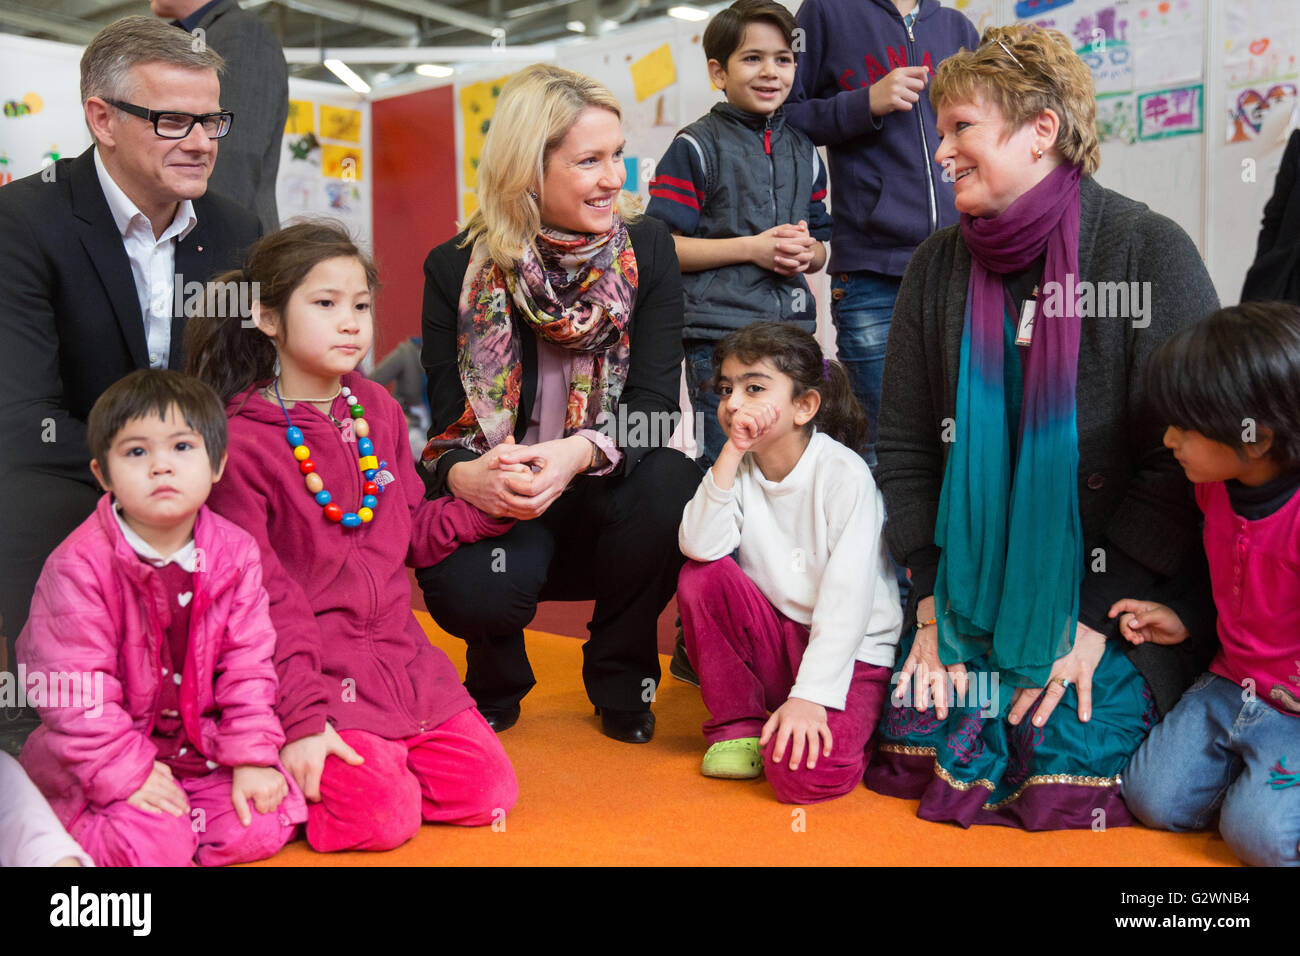 08.12.2015, Berlin, Berlin, Germania - Ministro della famiglia Manuela Schwesig (SPD) visitata presso il centro congressi di un ricovero per i rifugiati. In gestito da Malteser proprietà, circa 1.000 rifugiati registrati sono alloggiati, la maggior parte delle loro famiglie. Qui quando si visita la custodia dei bambini. 0DB151208D016CAROEX.JPG - non per la vendita in G E R M A N Y, A U S T R I A, S W I T Z e R L A N D [modello di rilascio: NO, la proprietà di rilascio: NO, (c) caro agenzia fotografica / Bleicker, http://www.caro-images.com, info@carofoto.pl - Qualsiasi uso di questa immagine è soggetto a royalty!] Foto Stock